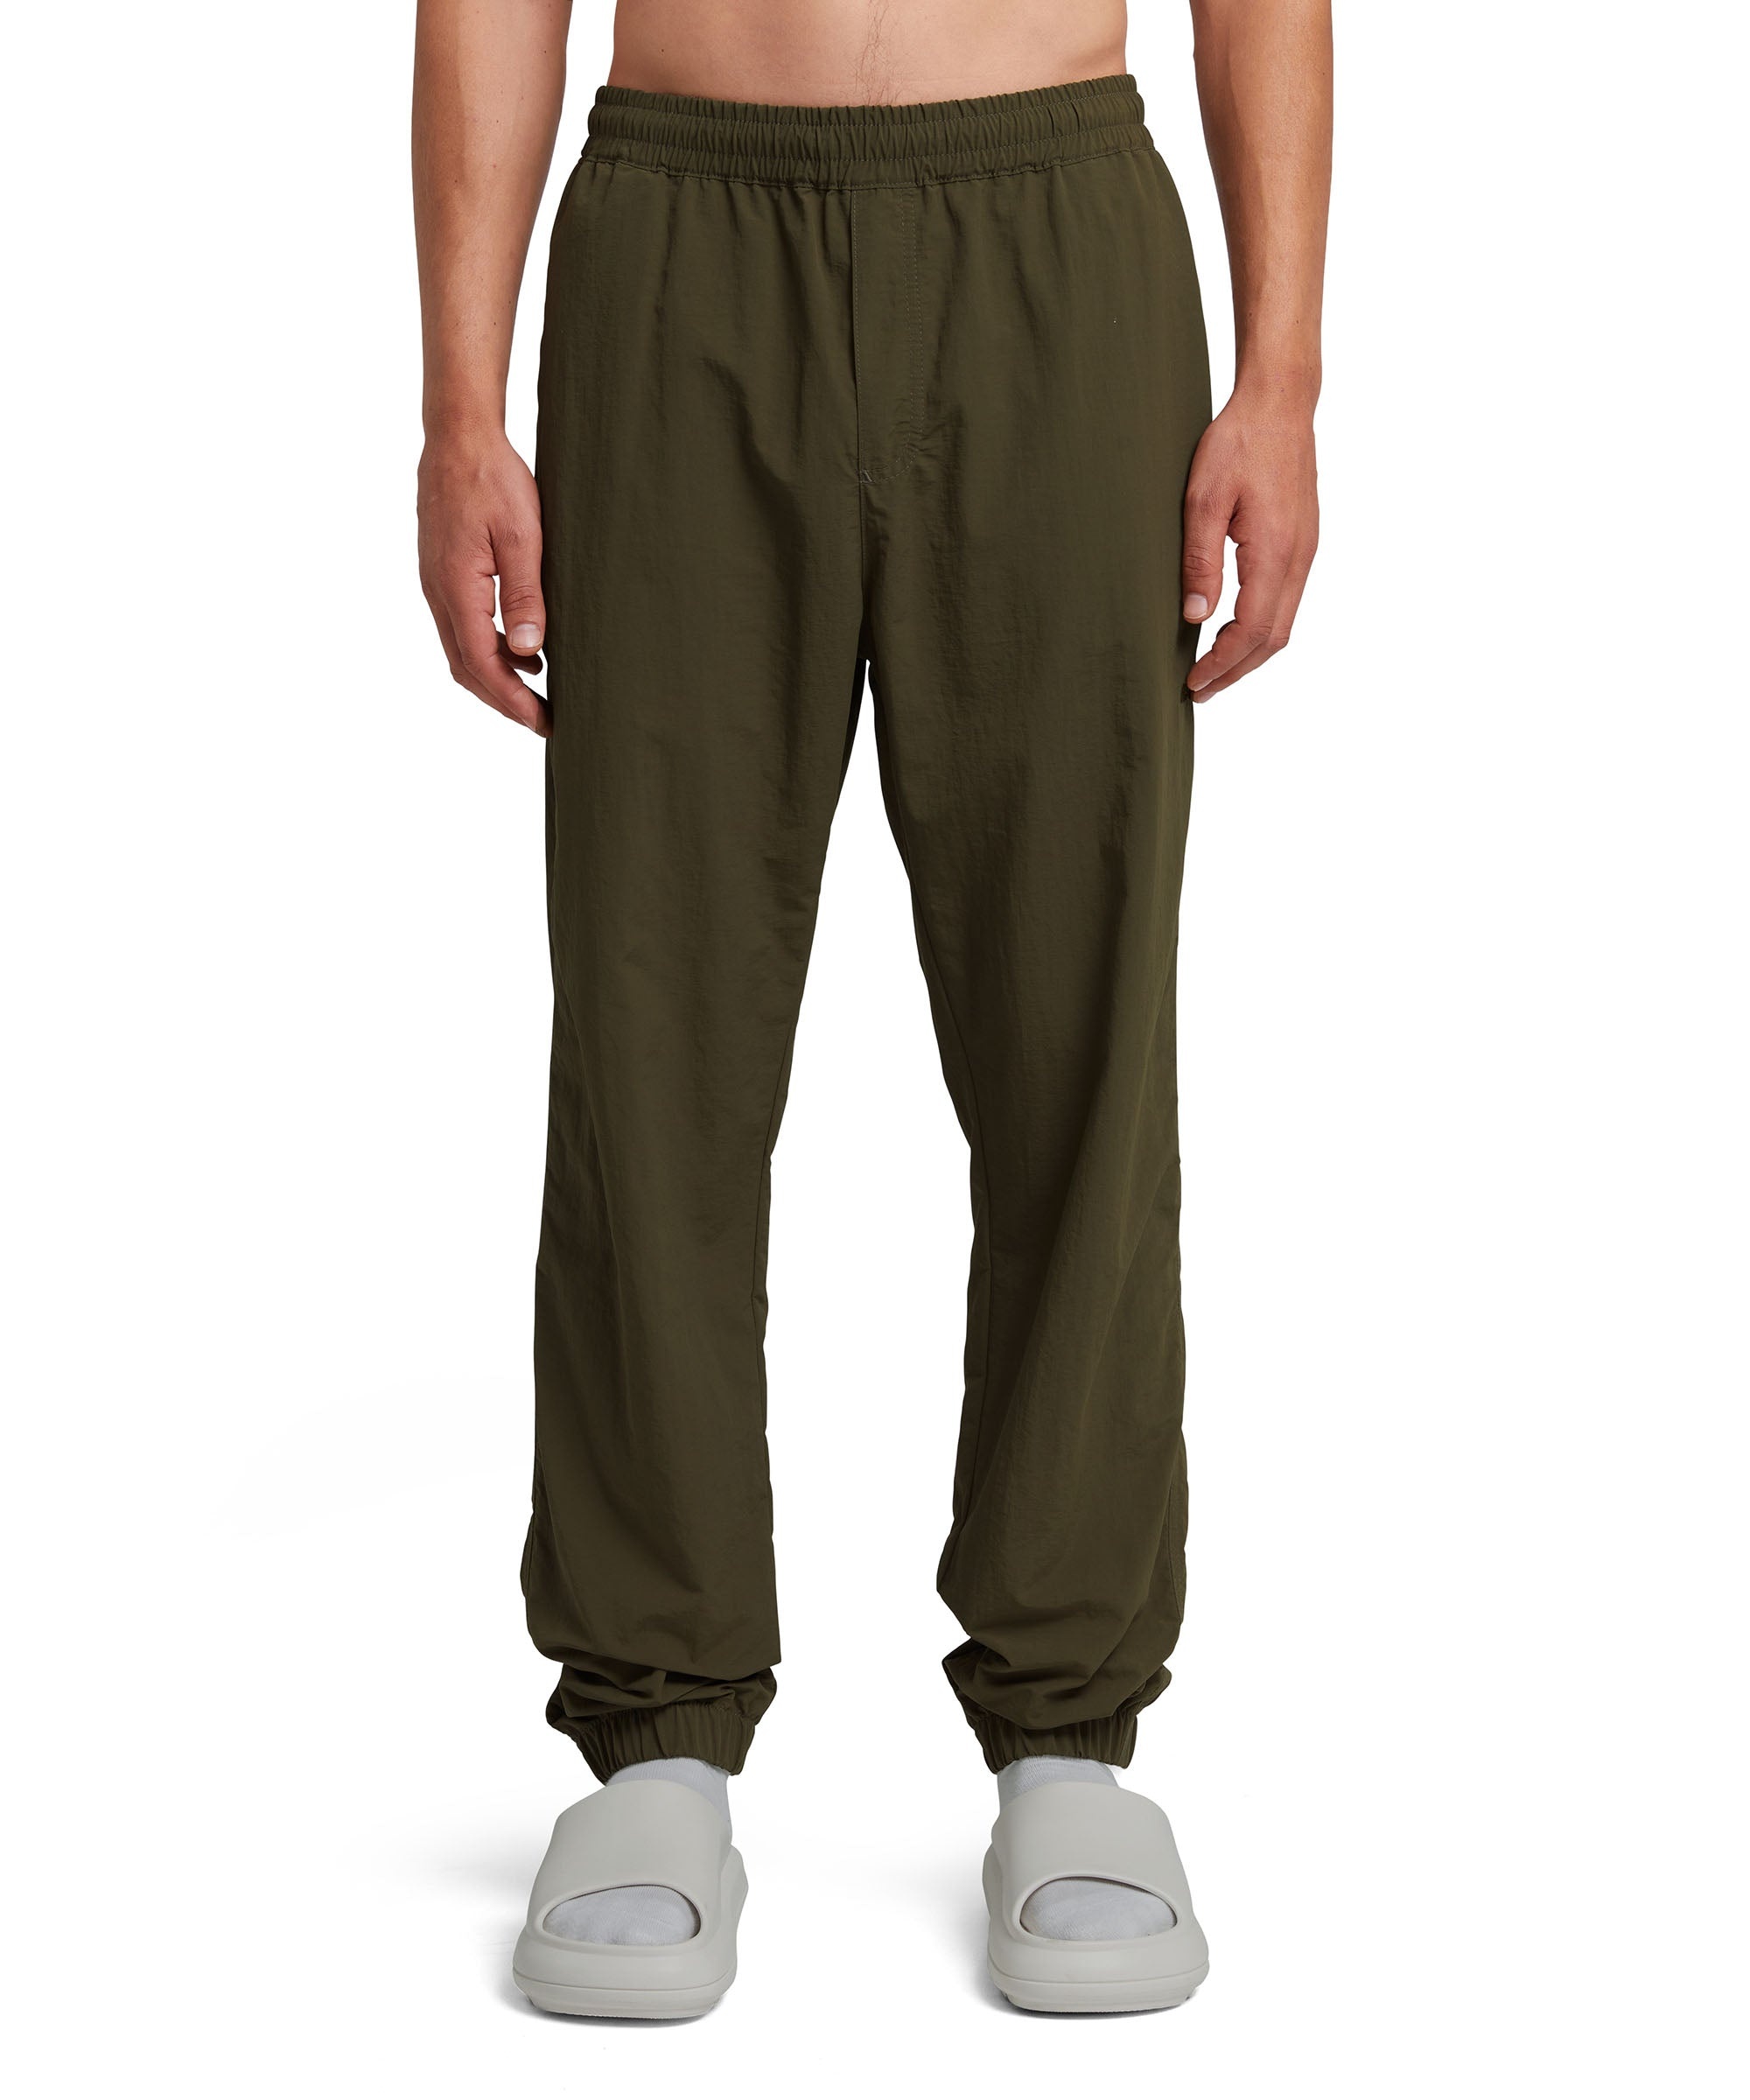 Nylon pants with elasticized waistband - 2